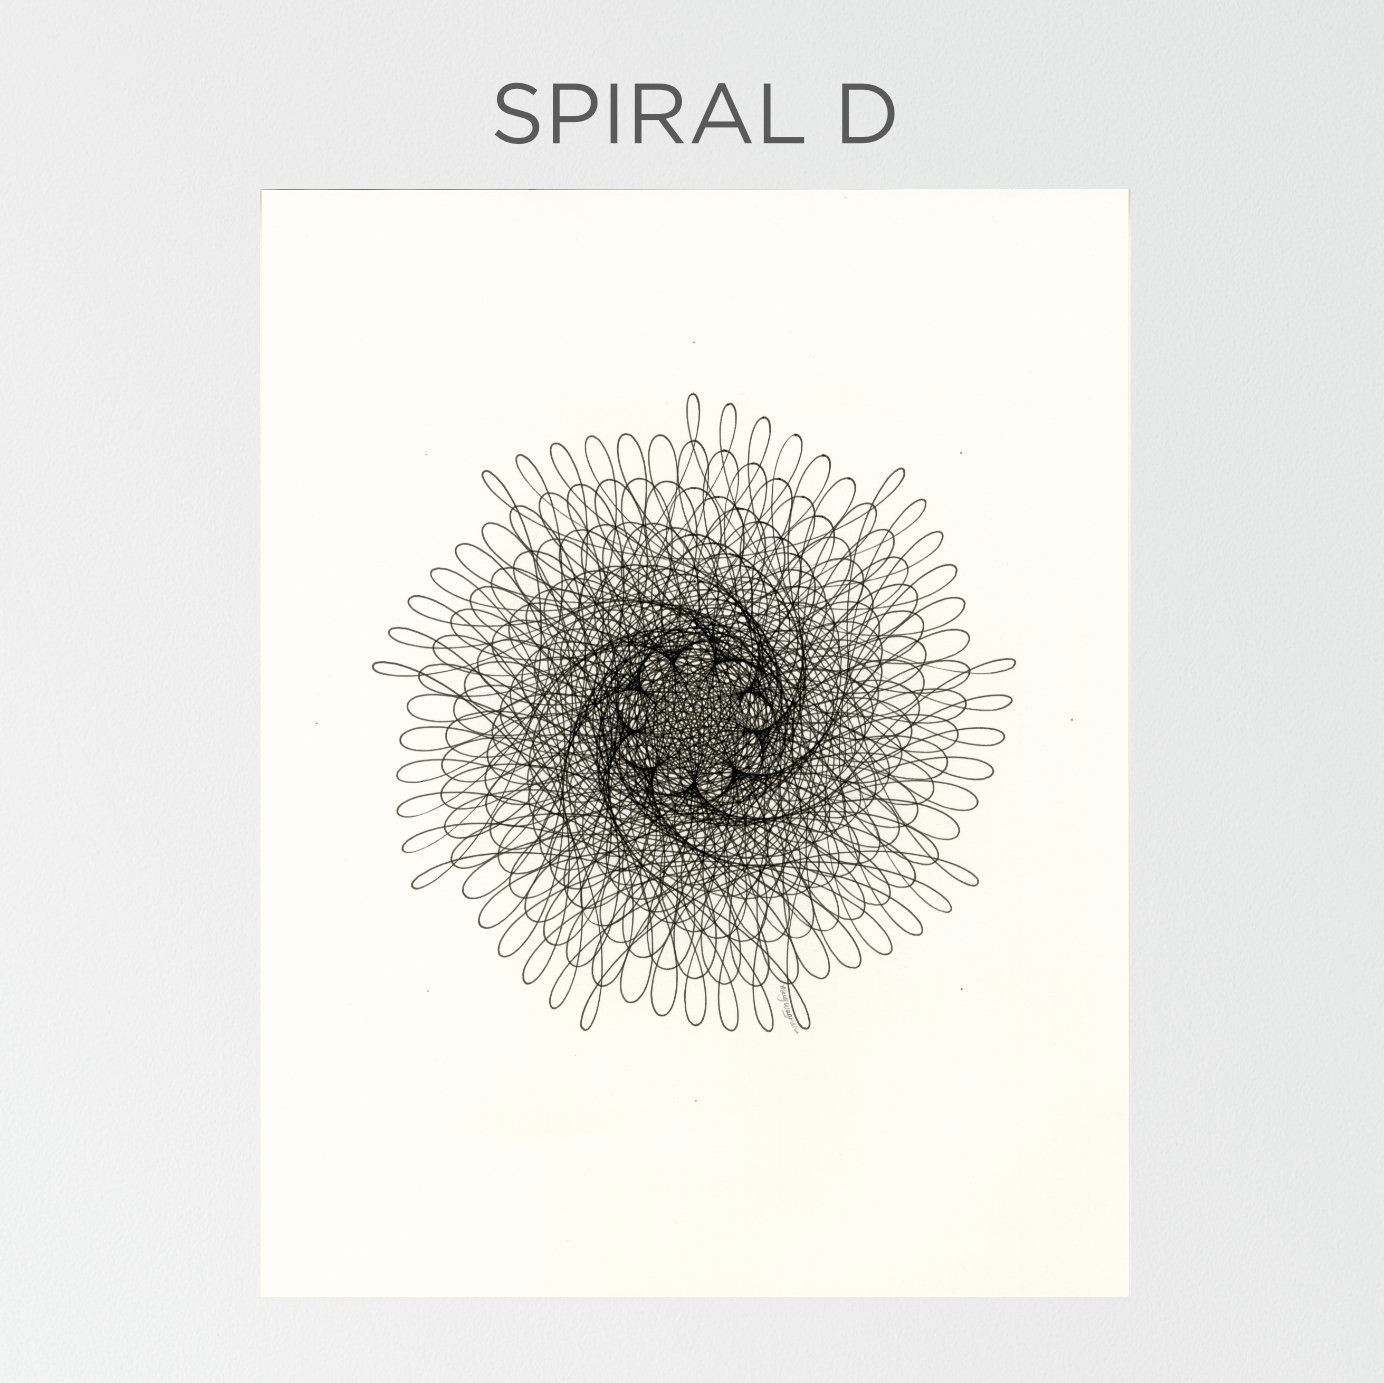 Spiral, an art print by Markiwiz